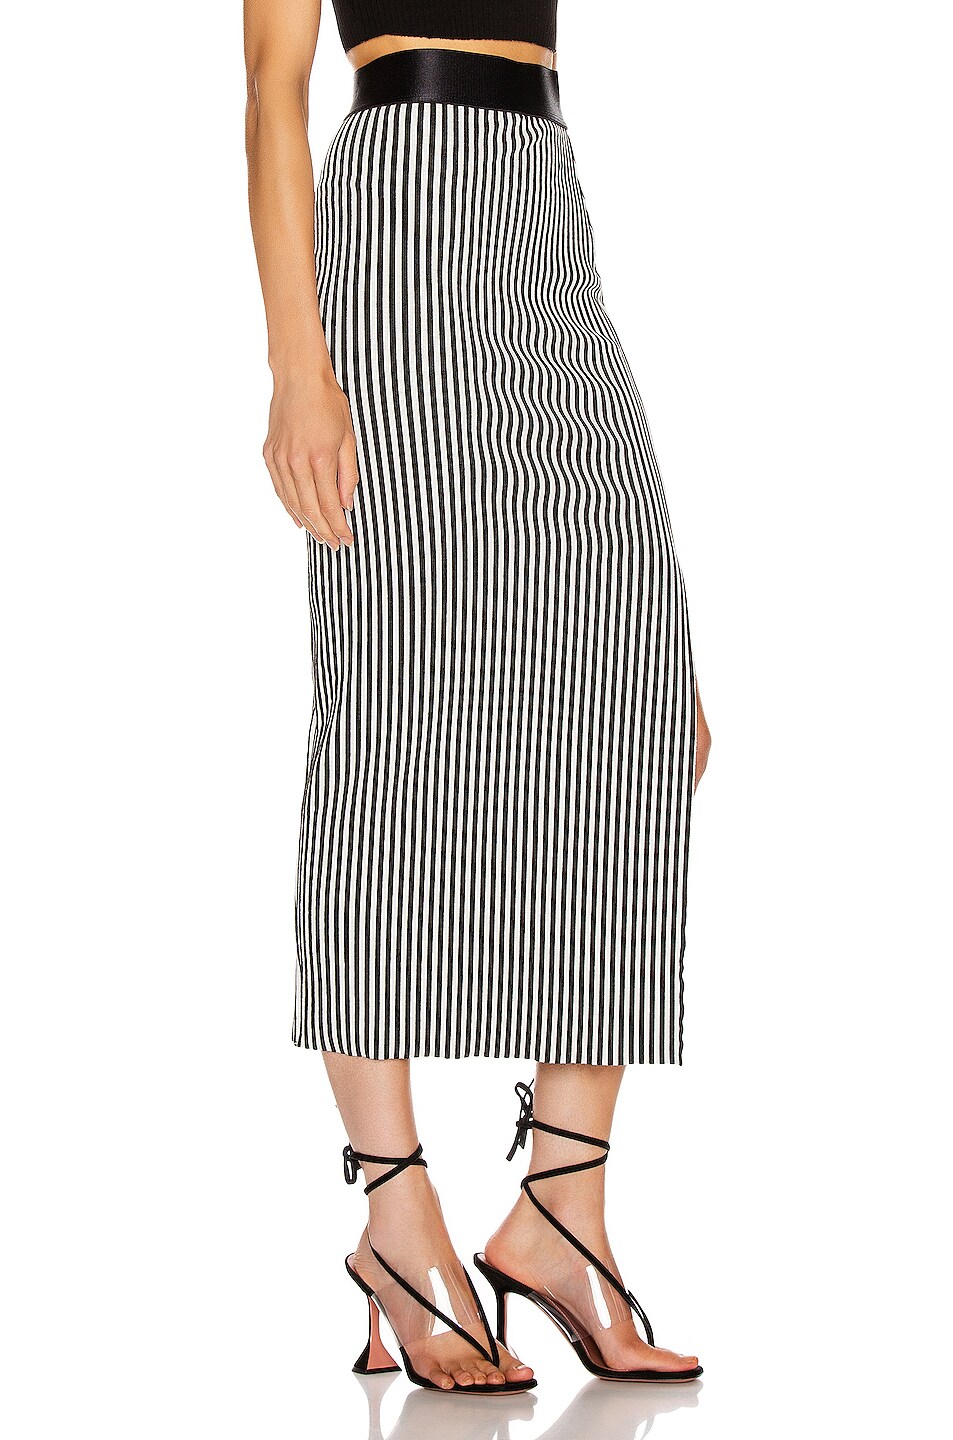 The Range Bound Striped Banded Skirt in White & Black | FWRD